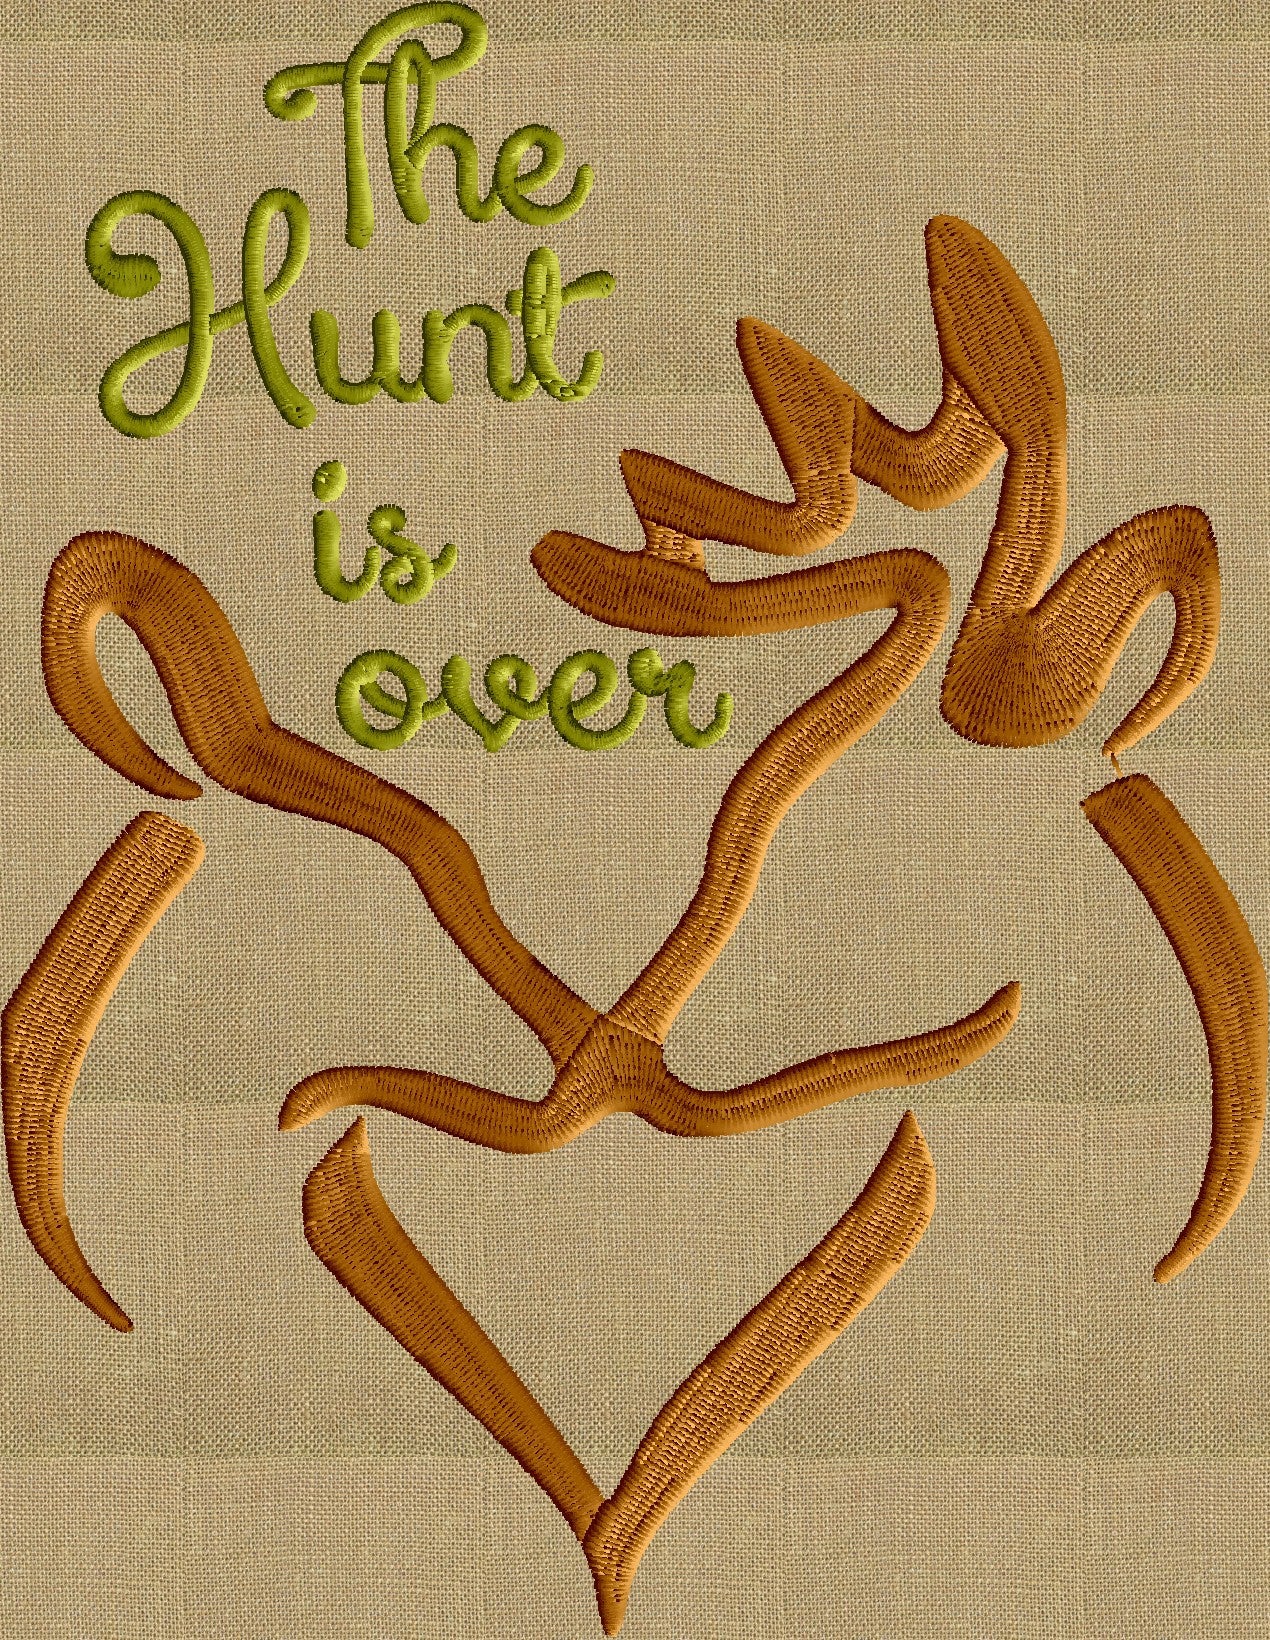 Deer Antlers "The Hunt is over" Font Frame -EMBROIDERY DESIGN - Font not included - 2 sizes - Instant download - Hus Vp3 Dst Exp Jef Pes formats